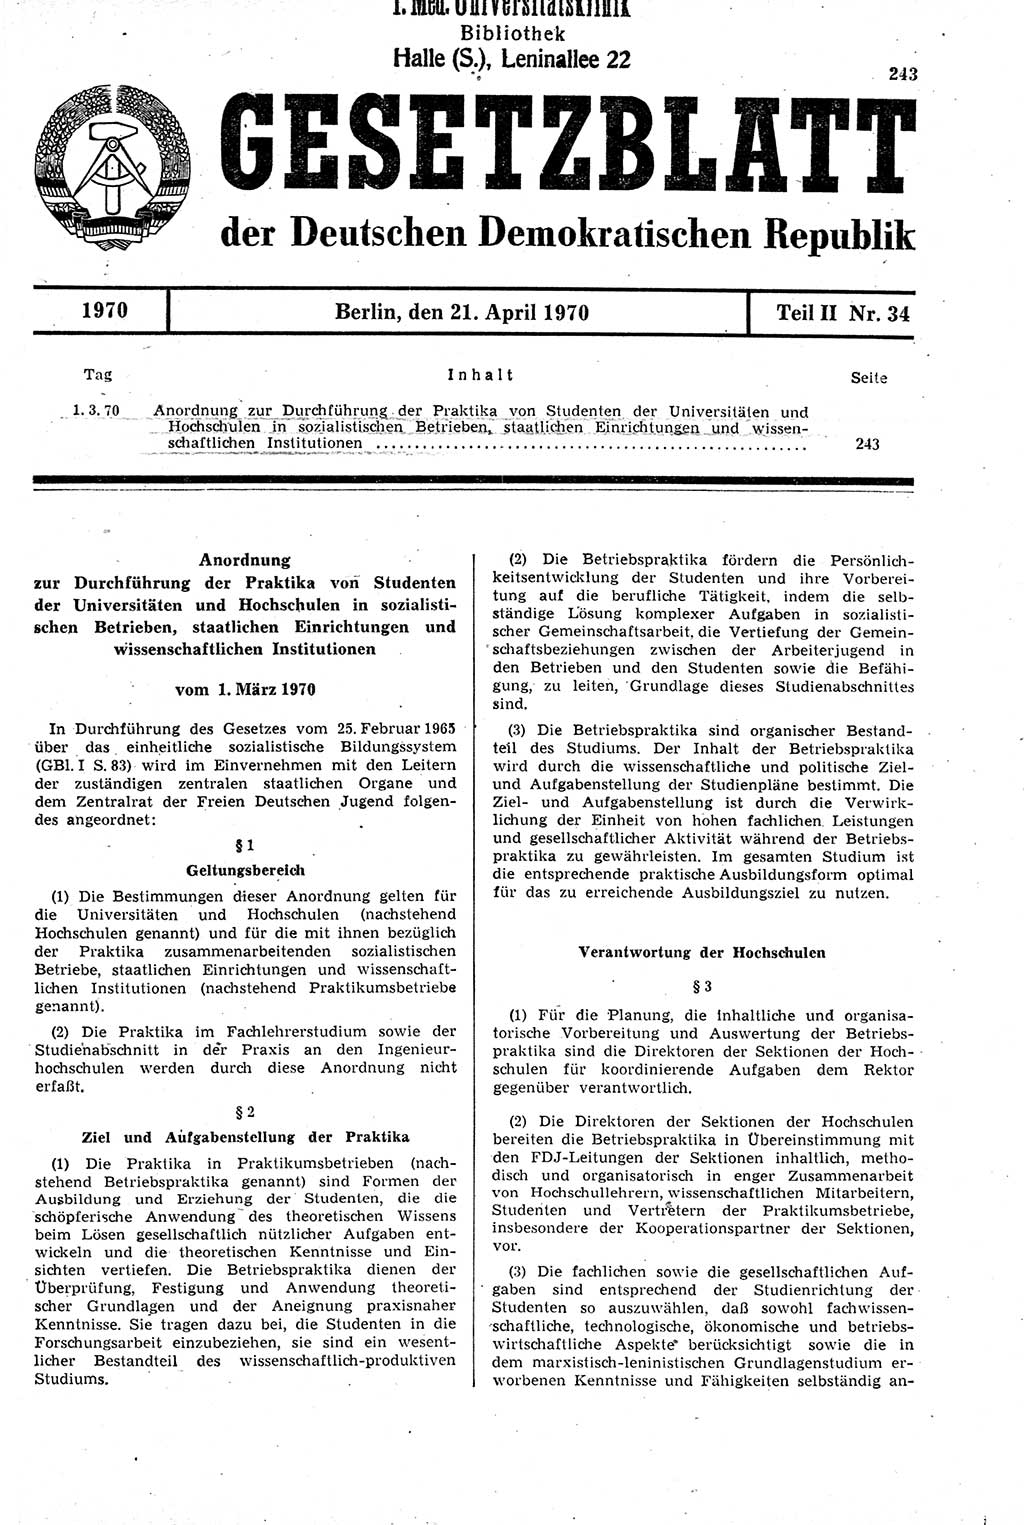 Gesetzblatt (GBl.) der Deutschen Demokratischen Republik (DDR) Teil ⅠⅠ 1970, Seite 243 (GBl. DDR ⅠⅠ 1970, S. 243)